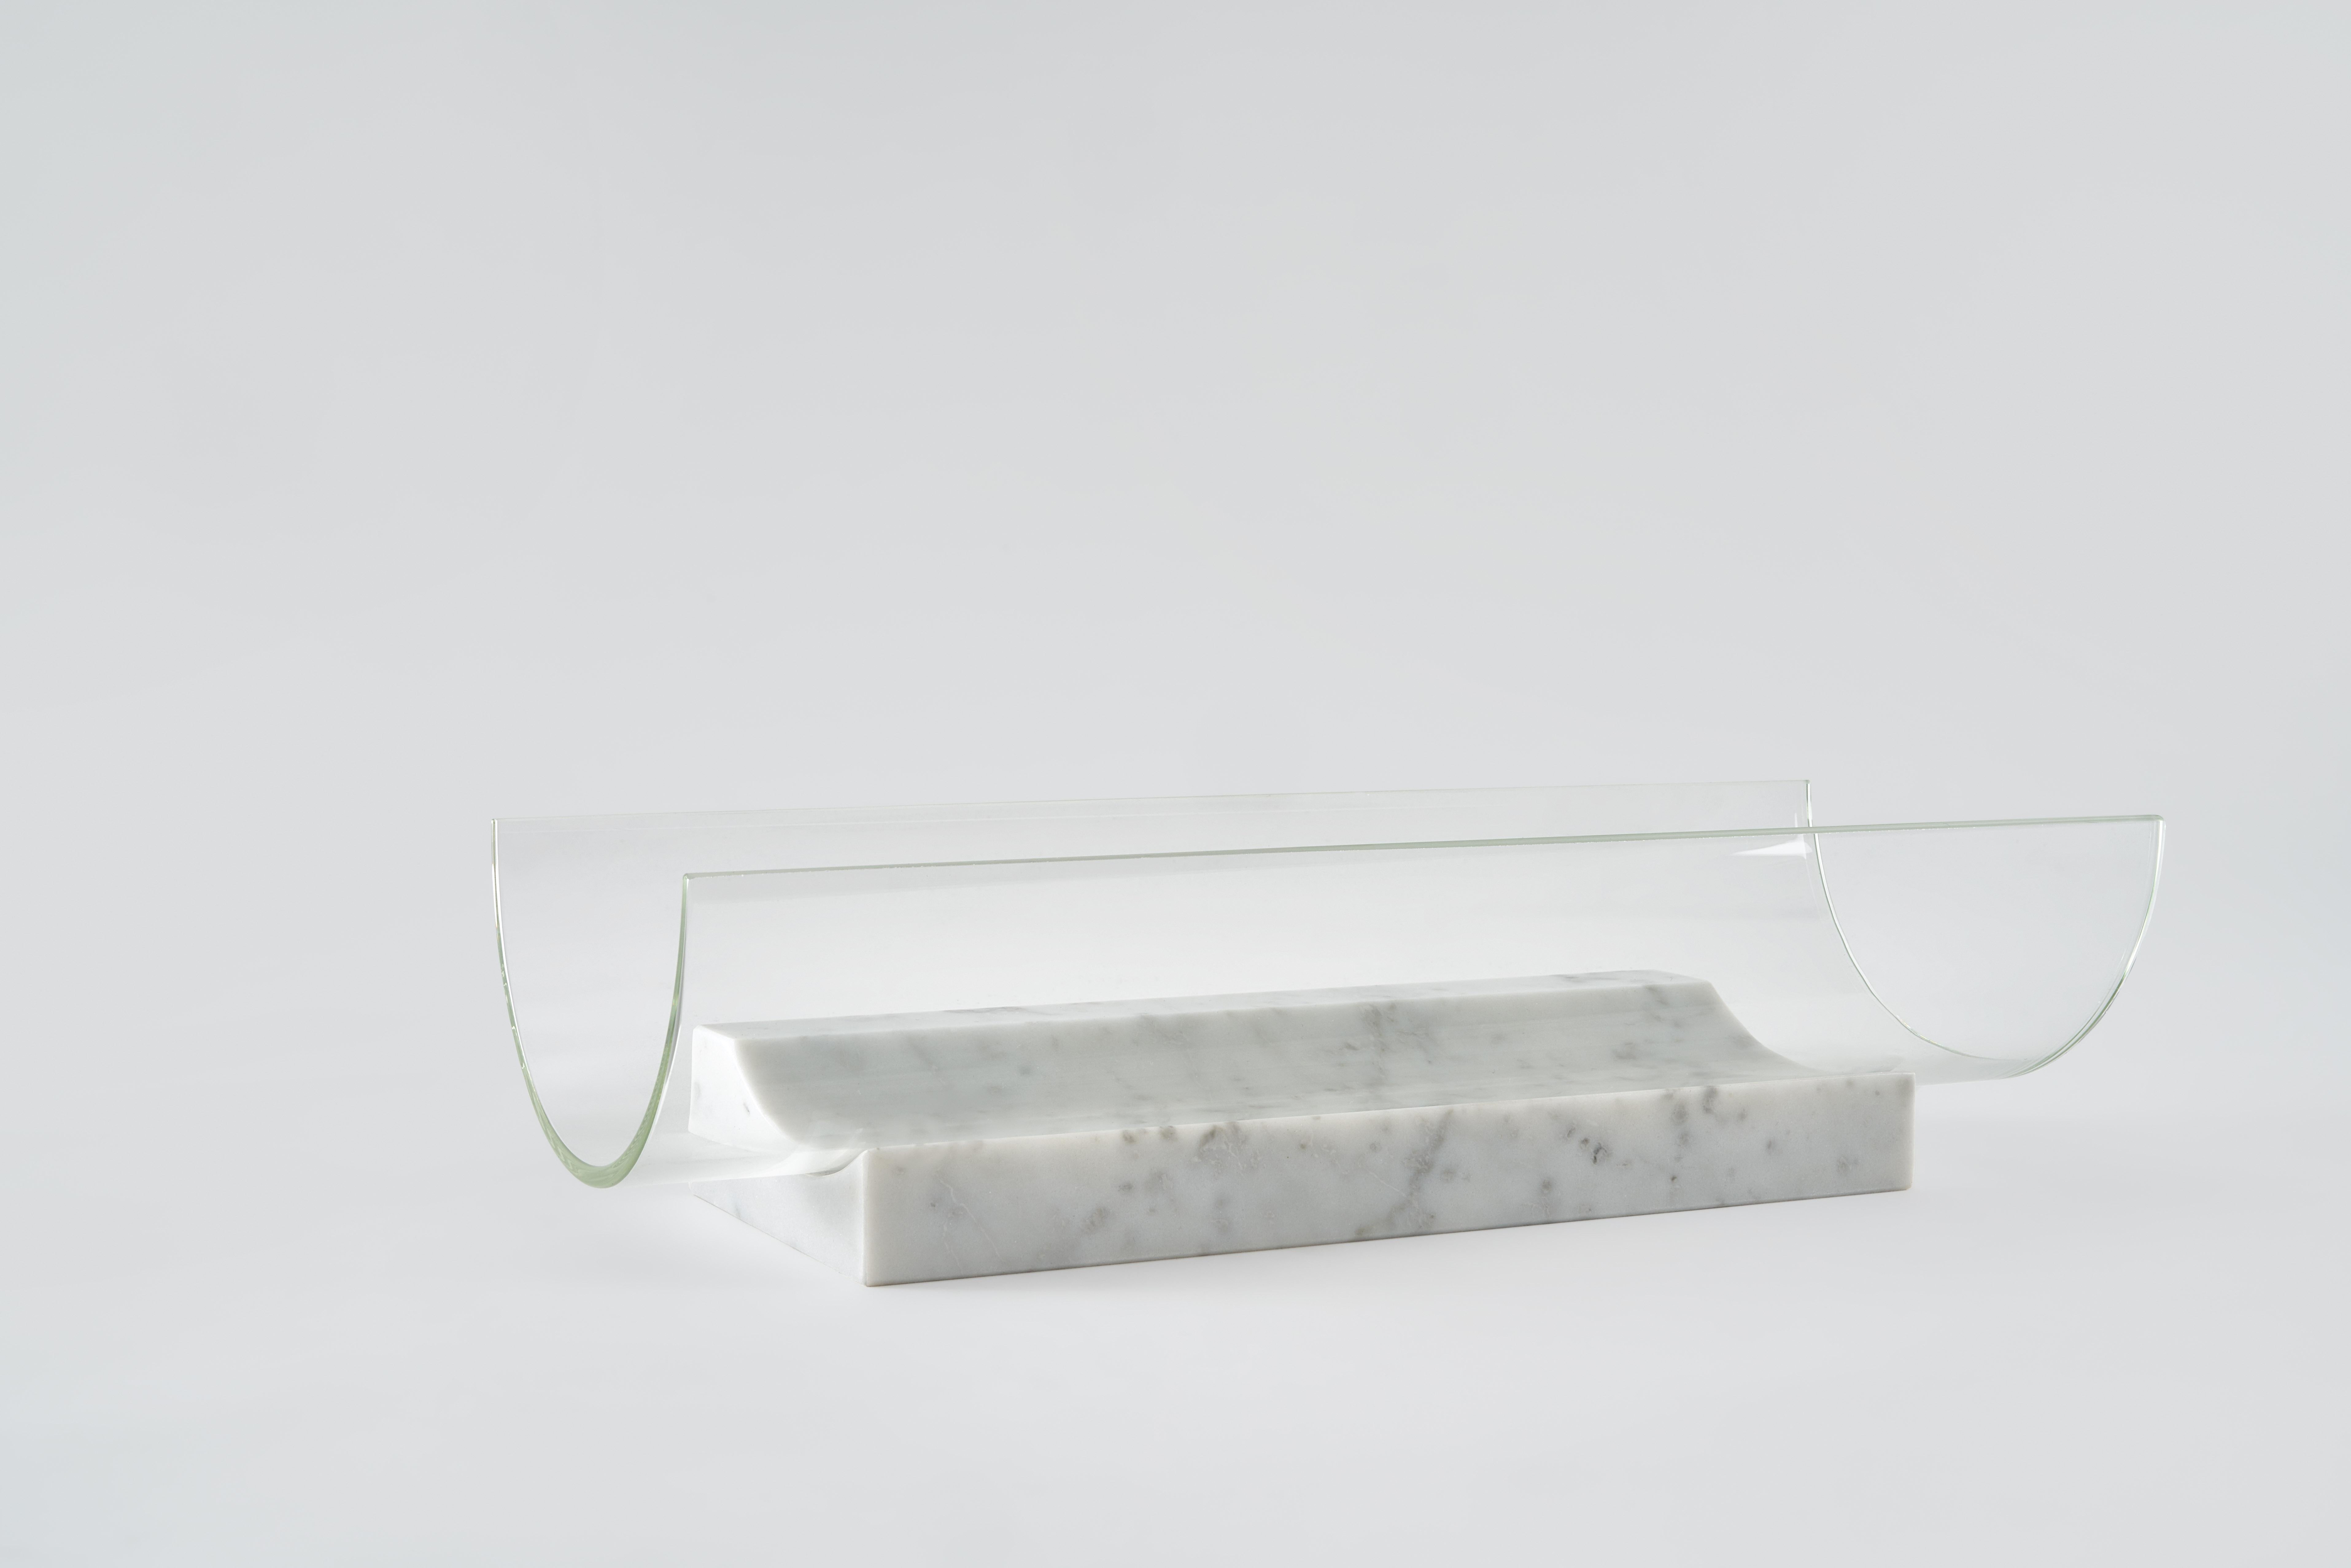 Schale Segno lang - Giorgio Bonaguro
Abmessungen: T 38 x B 15 x H 11 cm
MATERIALIEN: weißer Carrara-Marmor, Glas.

Eine Kollektion, die aus dem Wunsch heraus entstanden ist, Abfälle aus der Marmorverarbeitung wiederzuverwerten: kleine Teile von